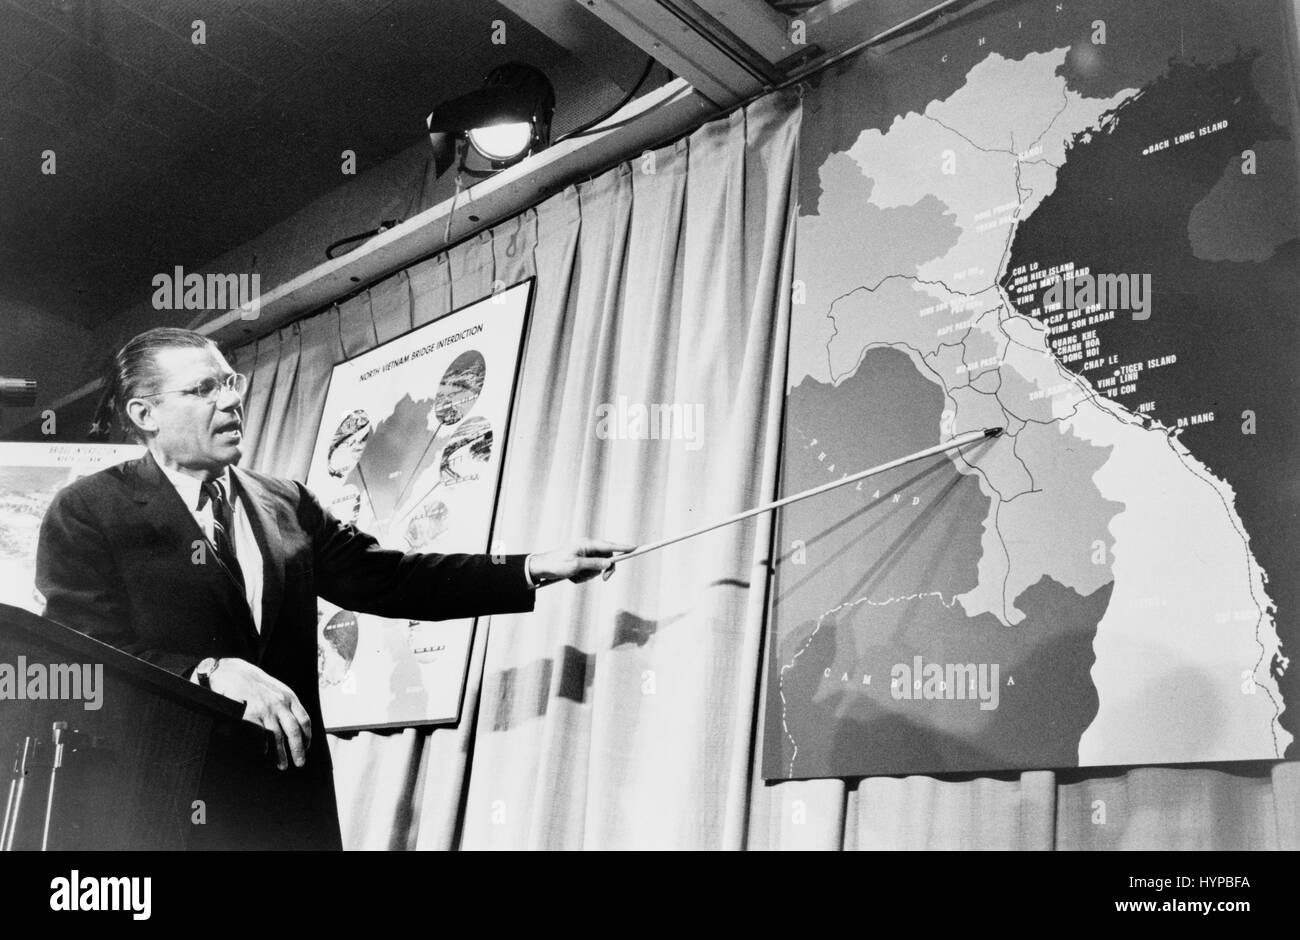 US-Verteidigungsminister Robert McNamara zeigt auf einer Karte von Vietnam auf einer Pressekonferenz. Washington, DC. 26. April 1965. Foto von Marion S. Trikosko. Stockfoto